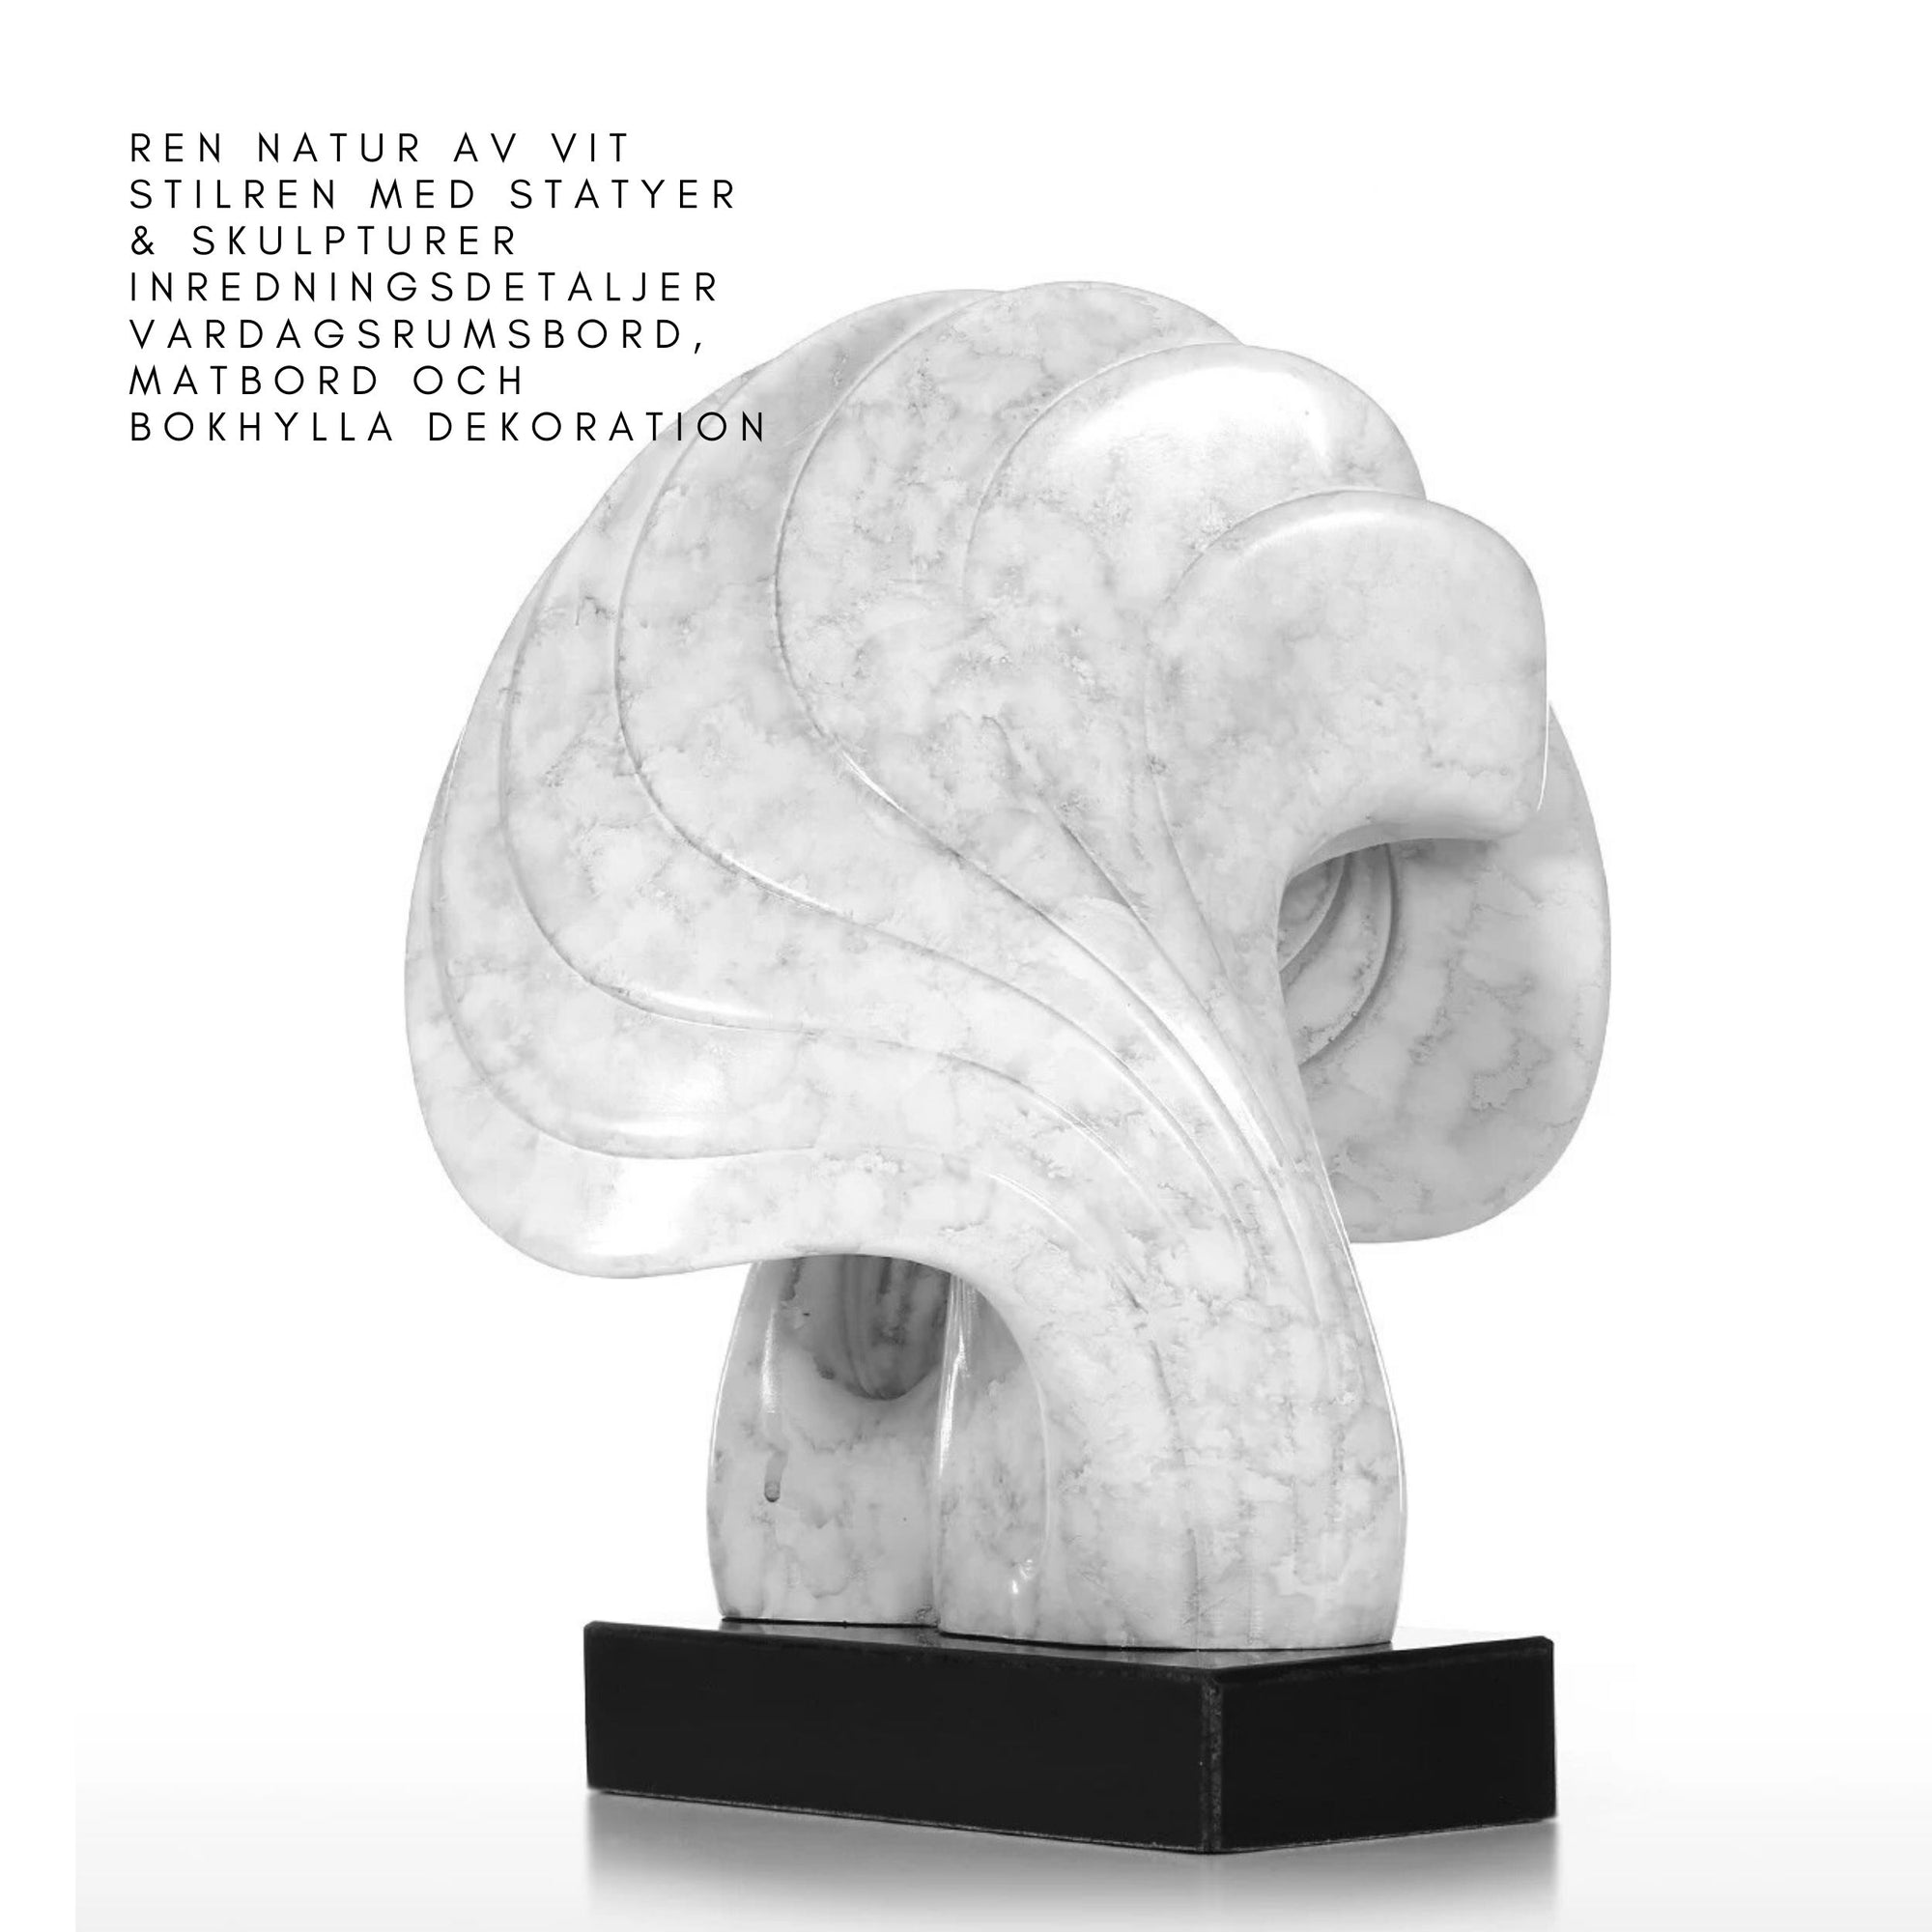 Ren Natur av Vit Stilren med Statyer & Skulpturer Inredningsdetaljer för Vardagsrumsbord, Matbord och Bokhylla Dekoration